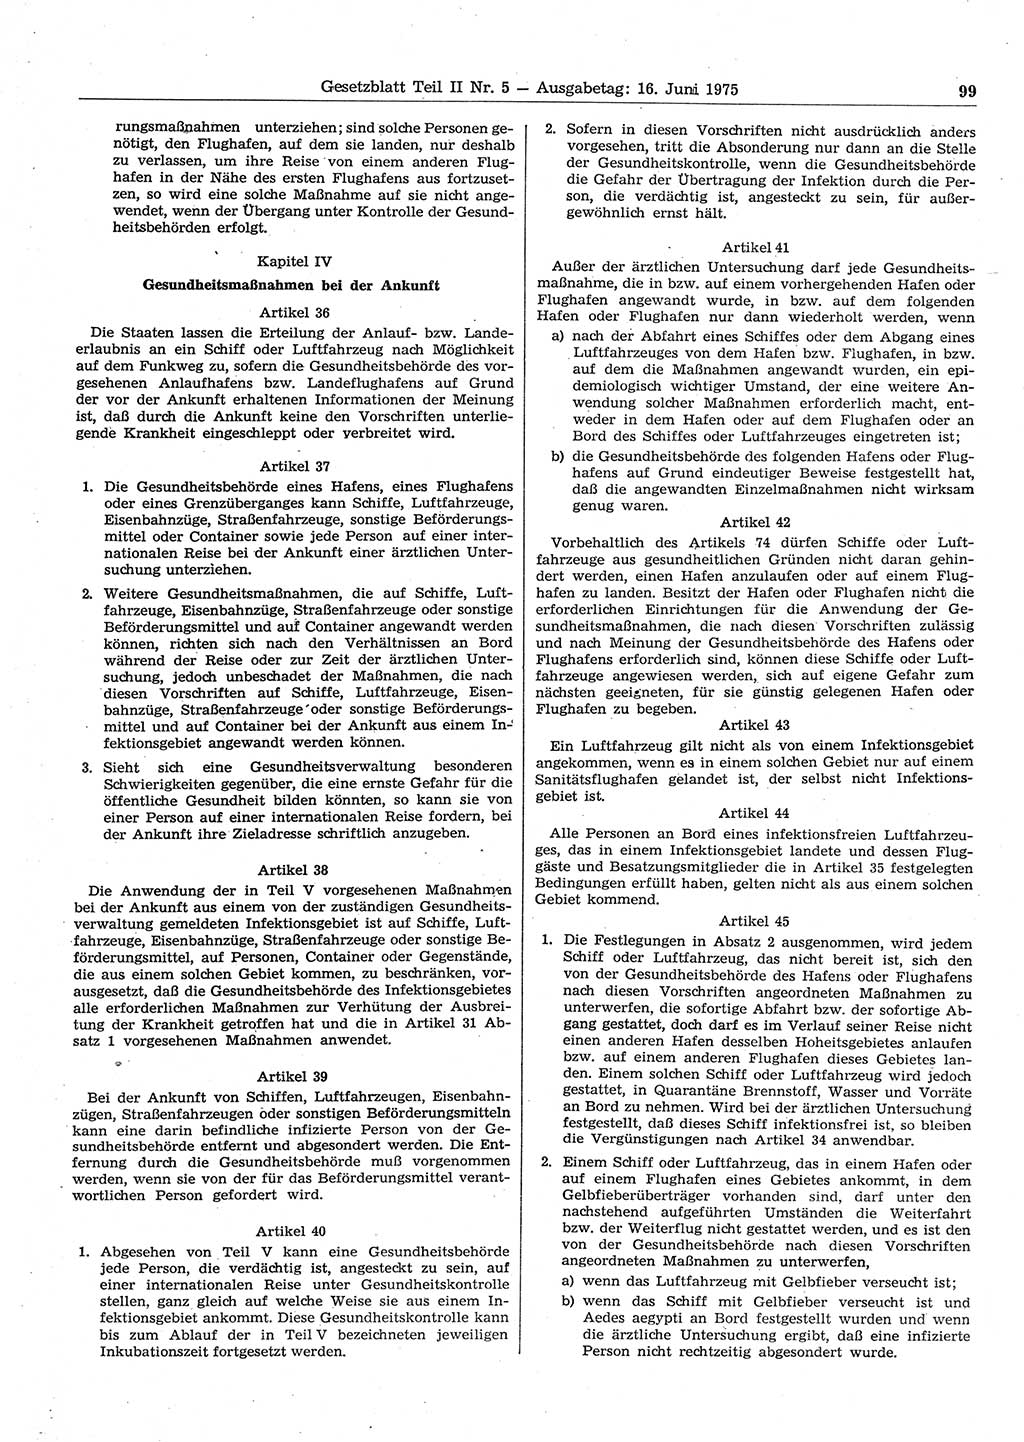 Gesetzblatt (GBl.) der Deutschen Demokratischen Republik (DDR) Teil ⅠⅠ 1975, Seite 99 (GBl. DDR ⅠⅠ 1975, S. 99)